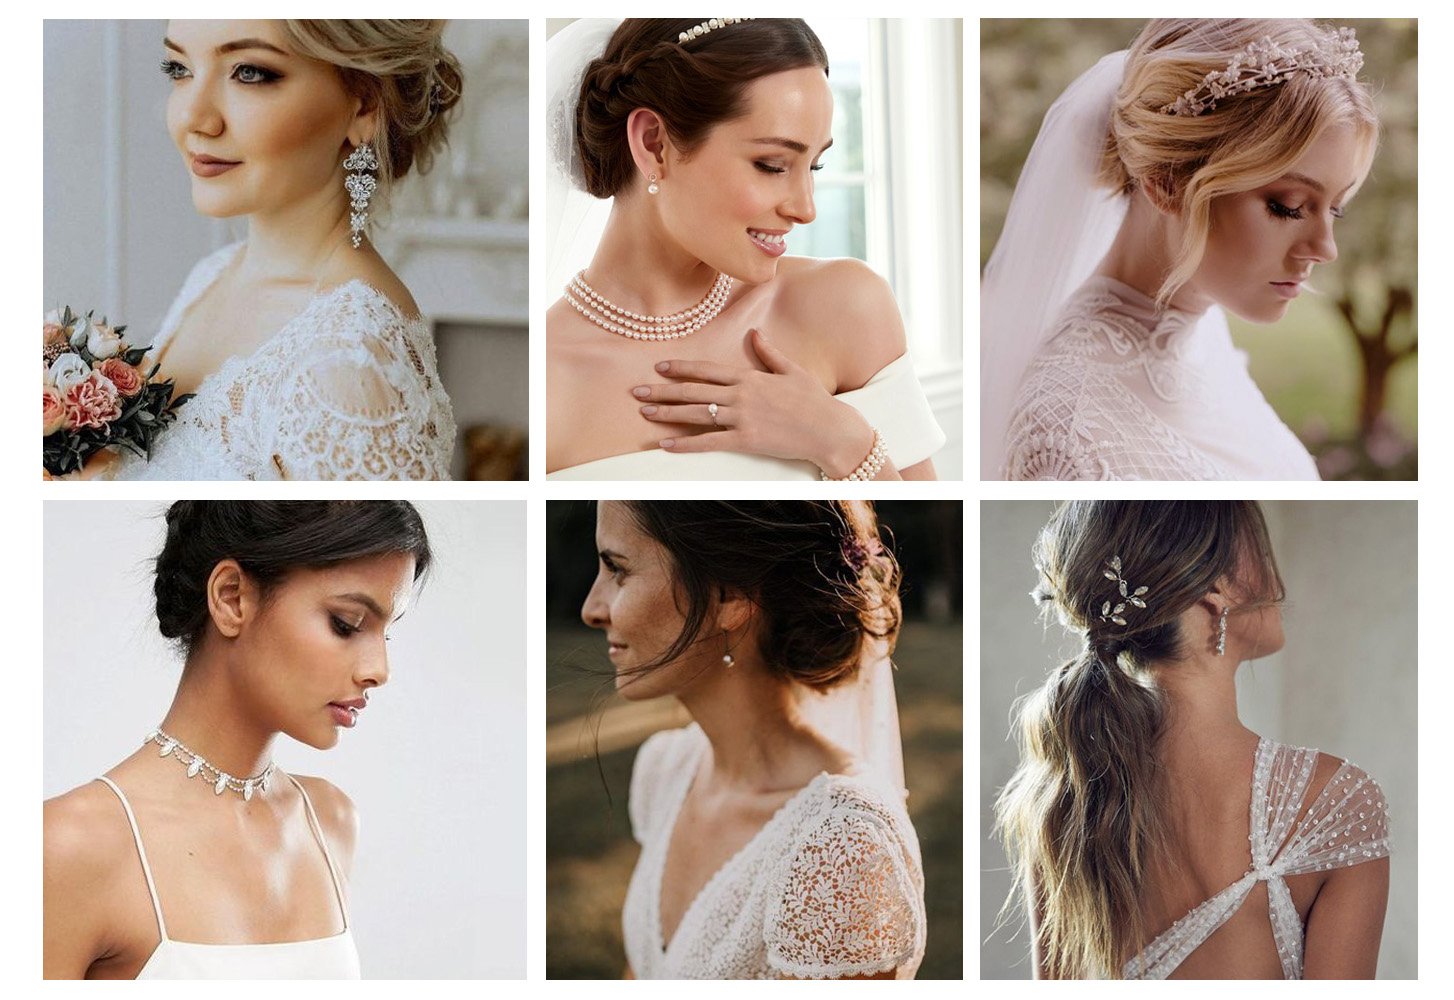 Bride freshwater pearl long earrings modern bridal earrings minimalist elegant wedding jewellery